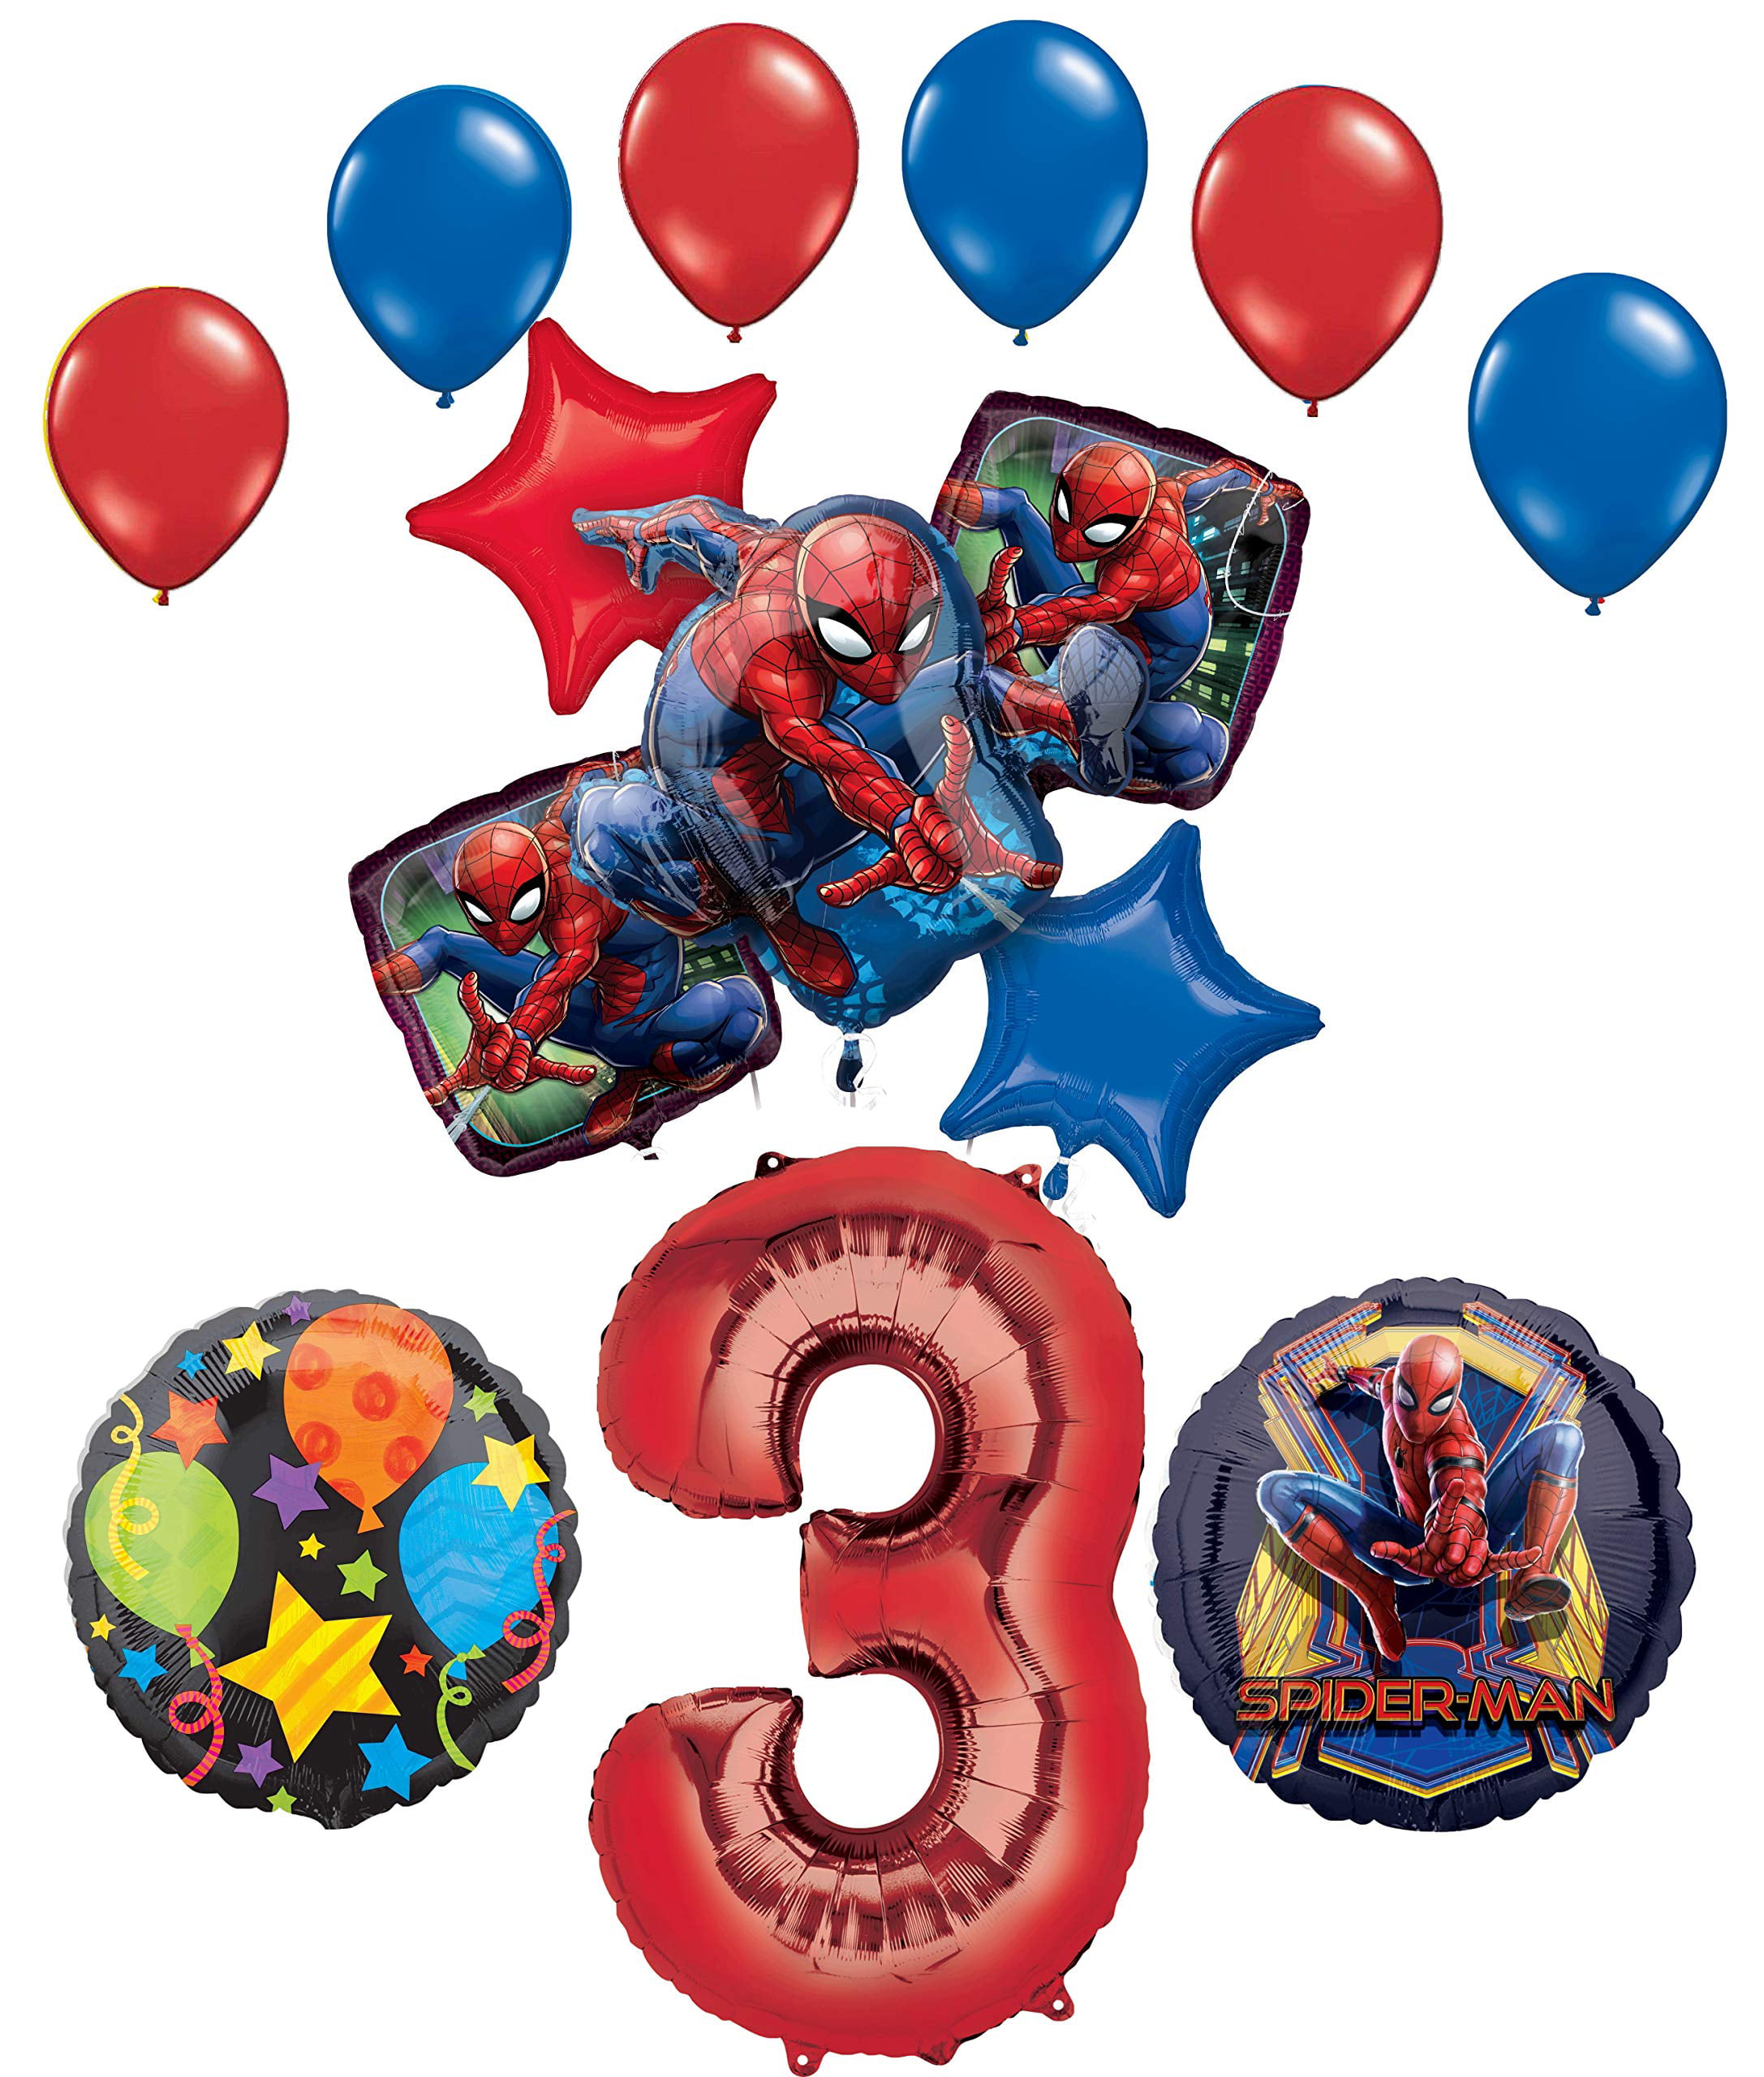 Spider-Man Balloon Bouquet 3rd Birthday Party Supplies Decorations Spiderman 